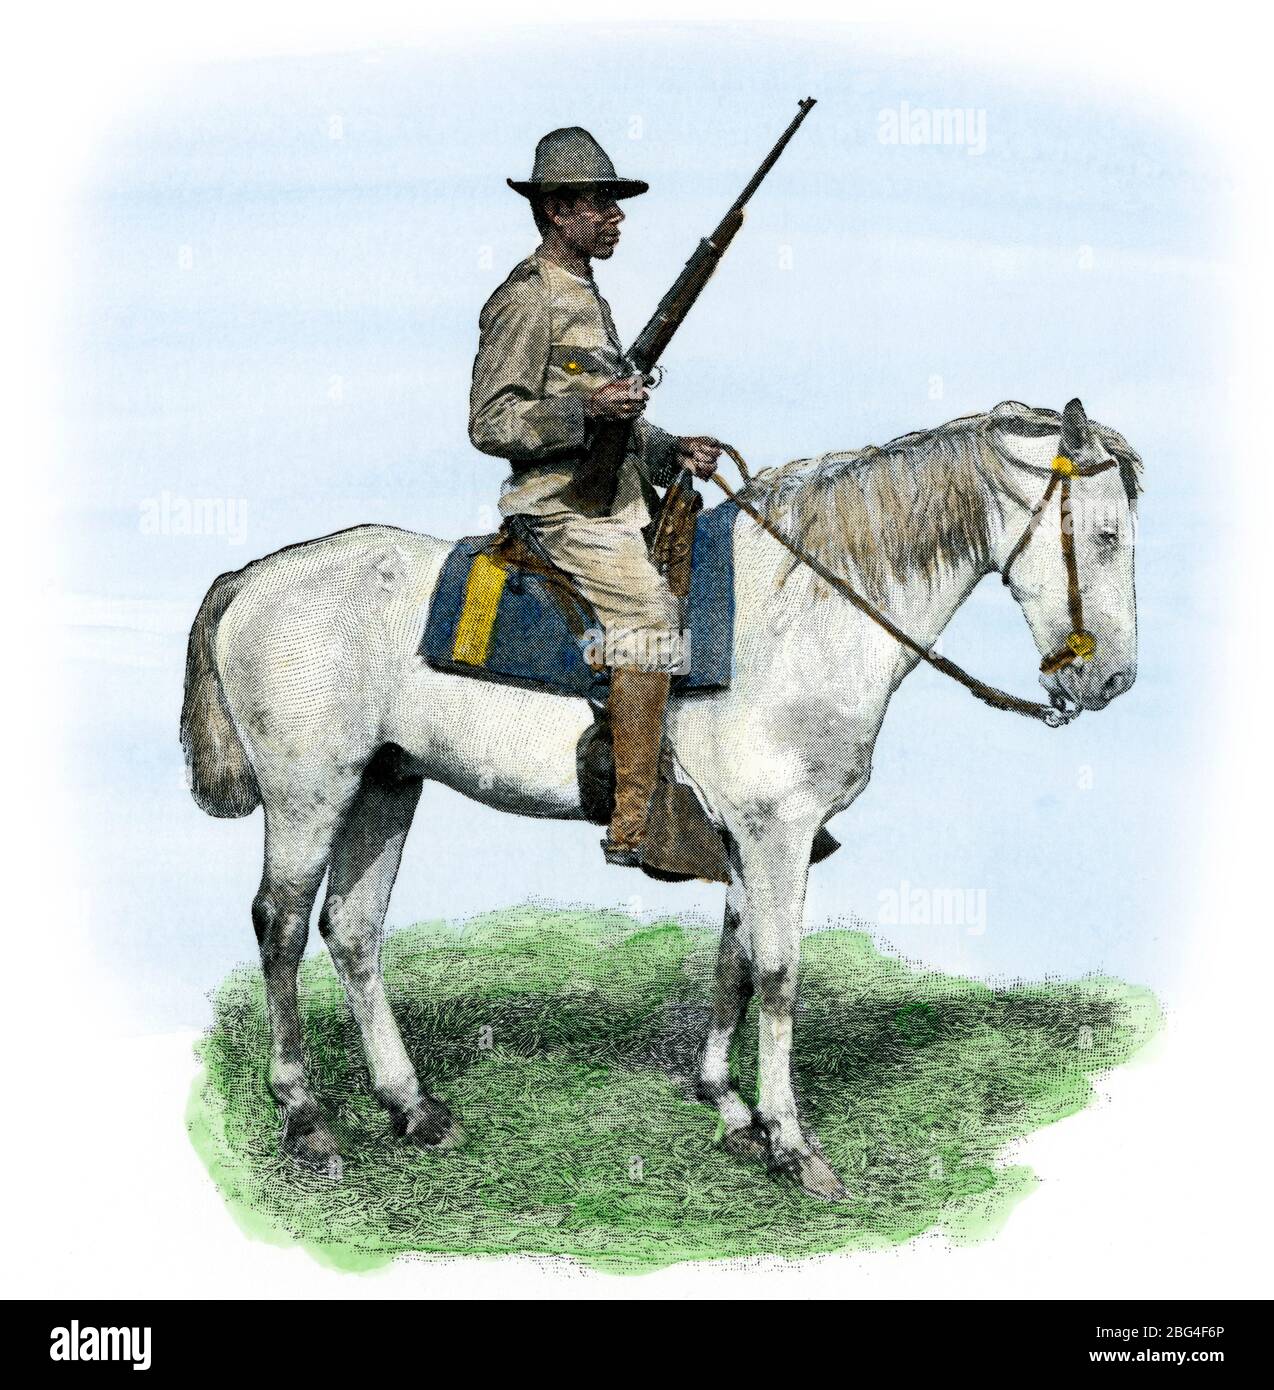 Áspero Rider William Pollock, Pawnee Indian, Guerra Hispano-Americana, 1898. Semitono de color a mano de una fotografía Foto de stock